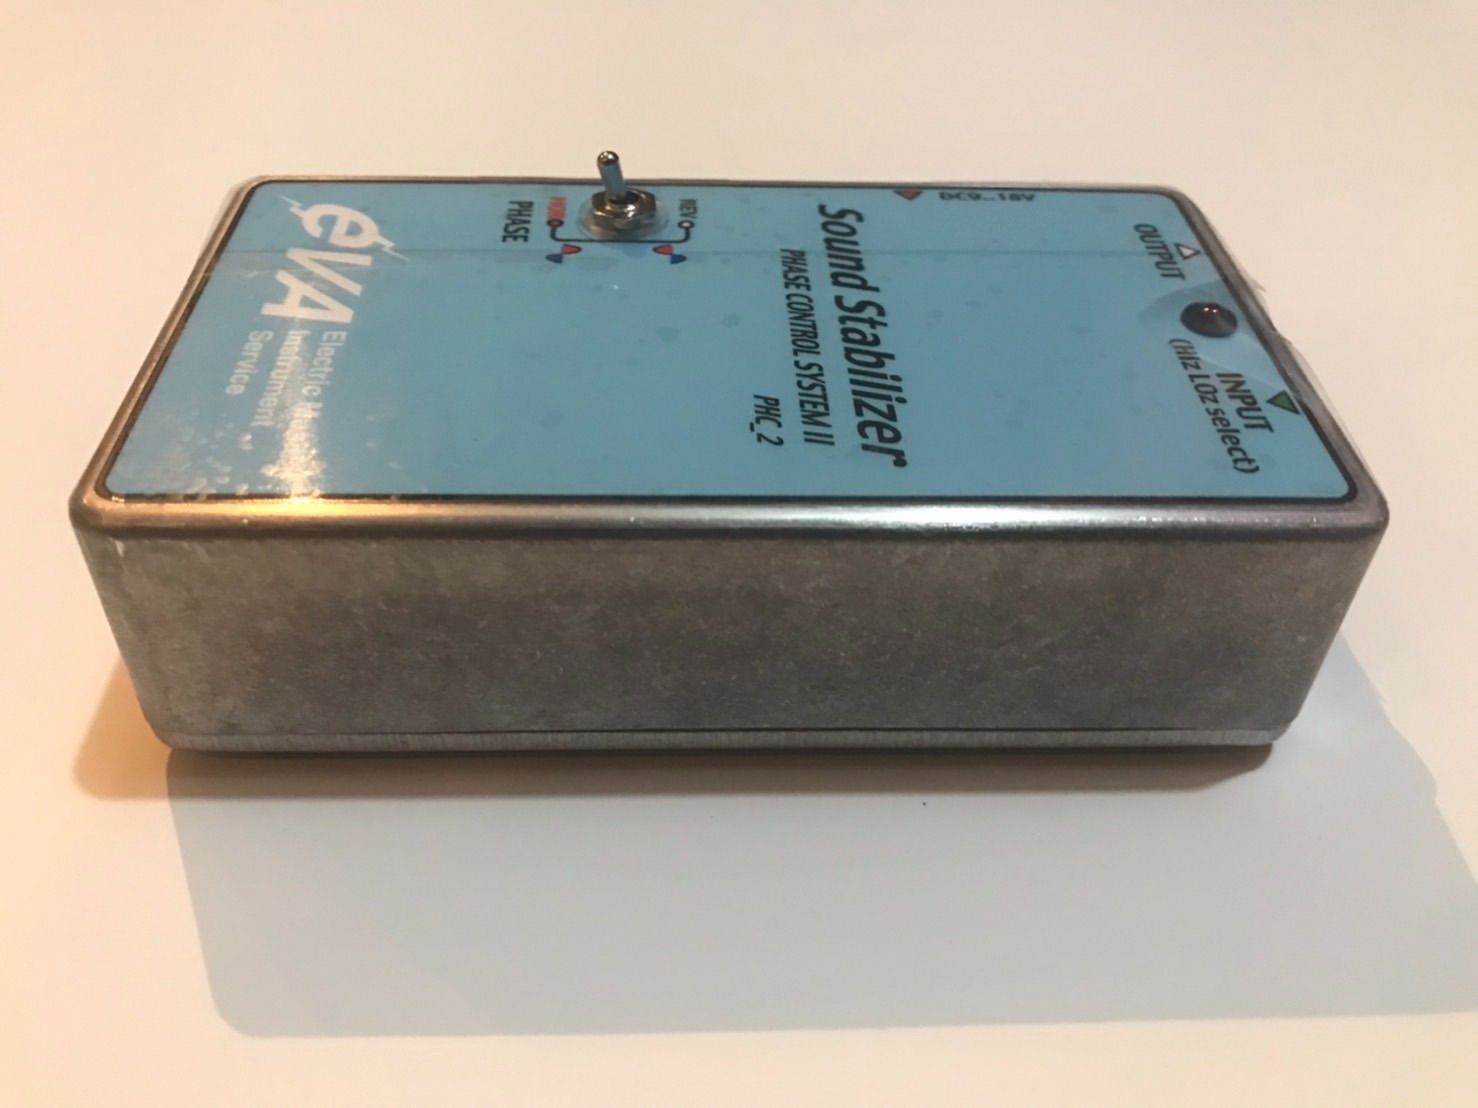 EVA電子　Sound Stabilizer PHC-2